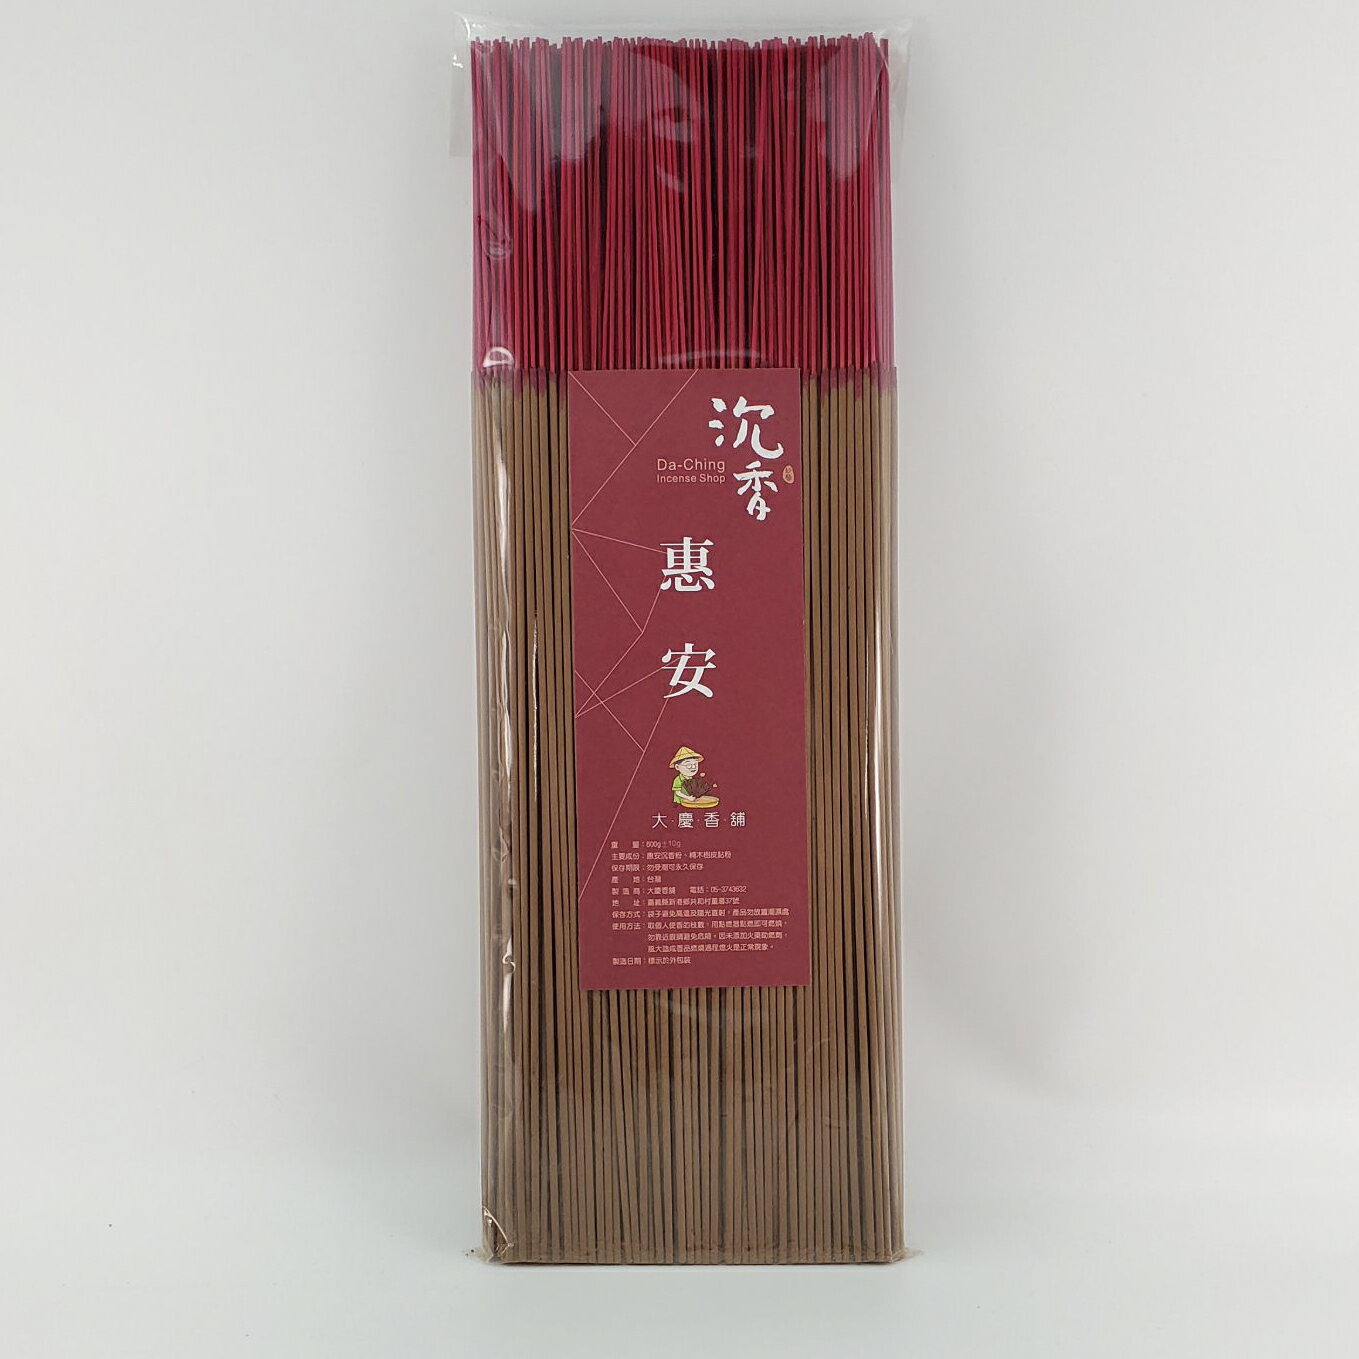 立香 沉香類 惠安沉香 (一尺六)台灣製造 天然 安全 環保